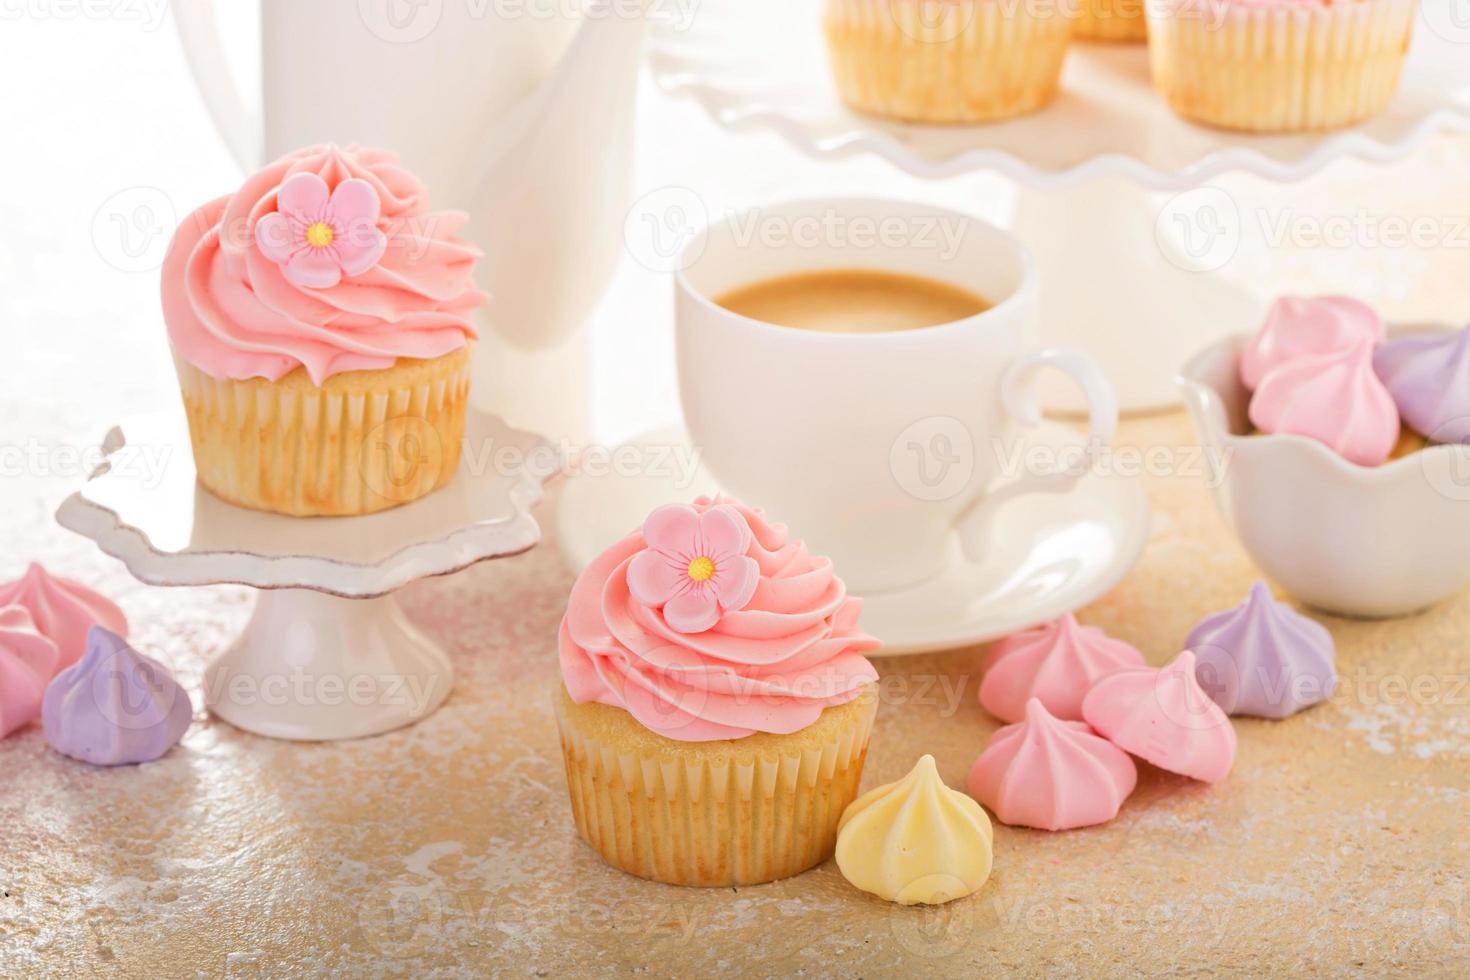 cupcakes de vainilla con glaseado de frambuesa rosa foto